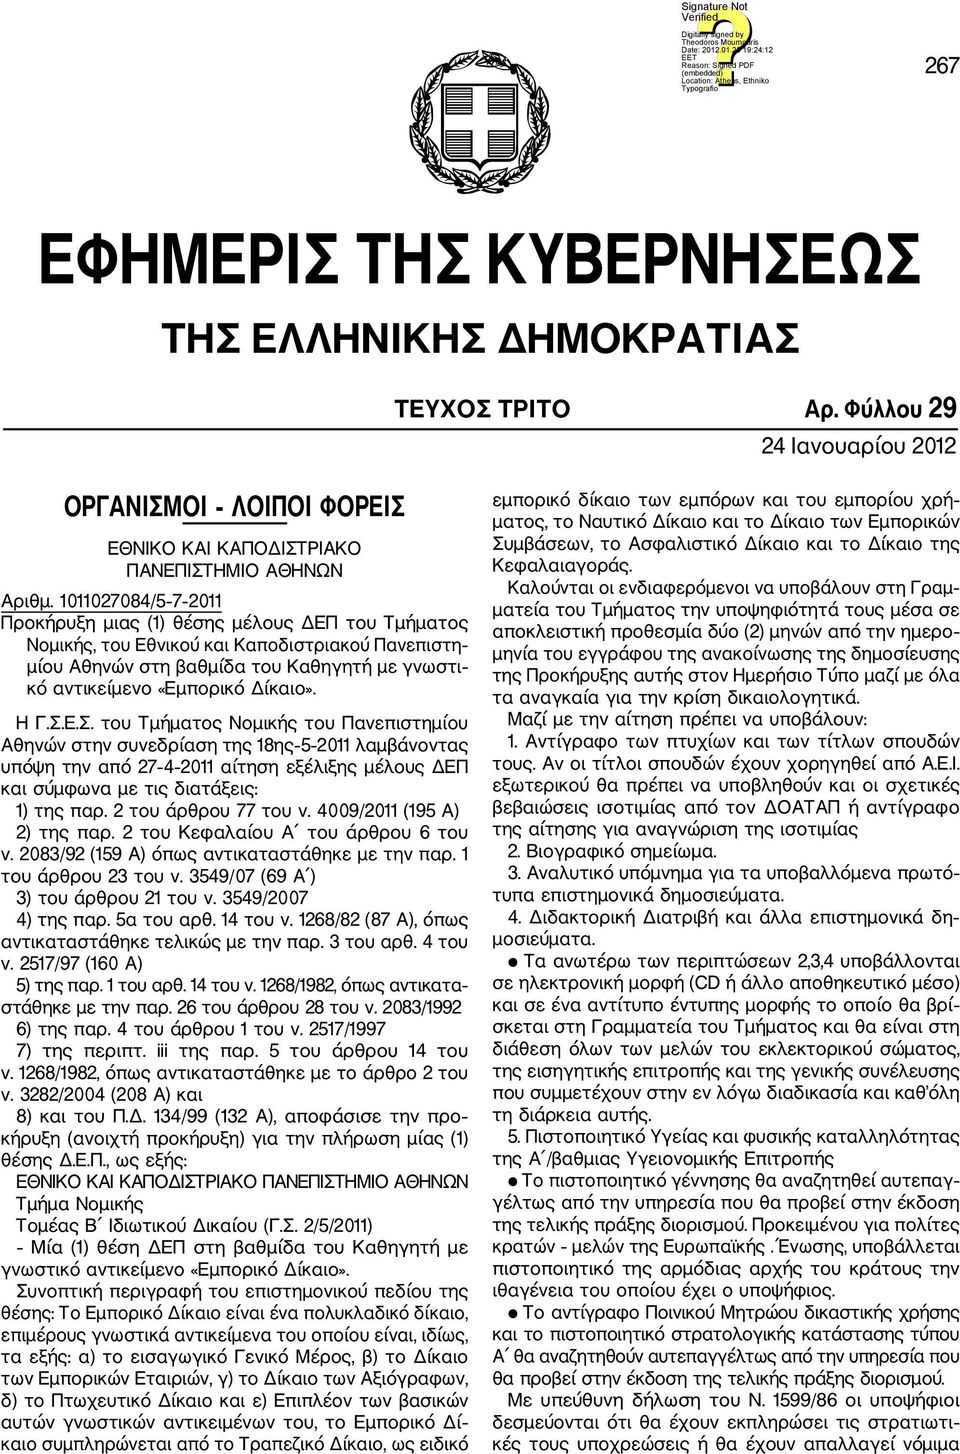 Η Γ.Σ.Ε.Σ. του Τμήματος Νομικής του Πανεπιστημίου Αθηνών στην συνεδρίαση της 18ης 5 2011 λαμβάνοντας υπόψη την από 27 4 2011 αίτηση εξέλιξης μέλους ΔΕΠ και σύμφωνα με τις διατάξεις: 1) της παρ.